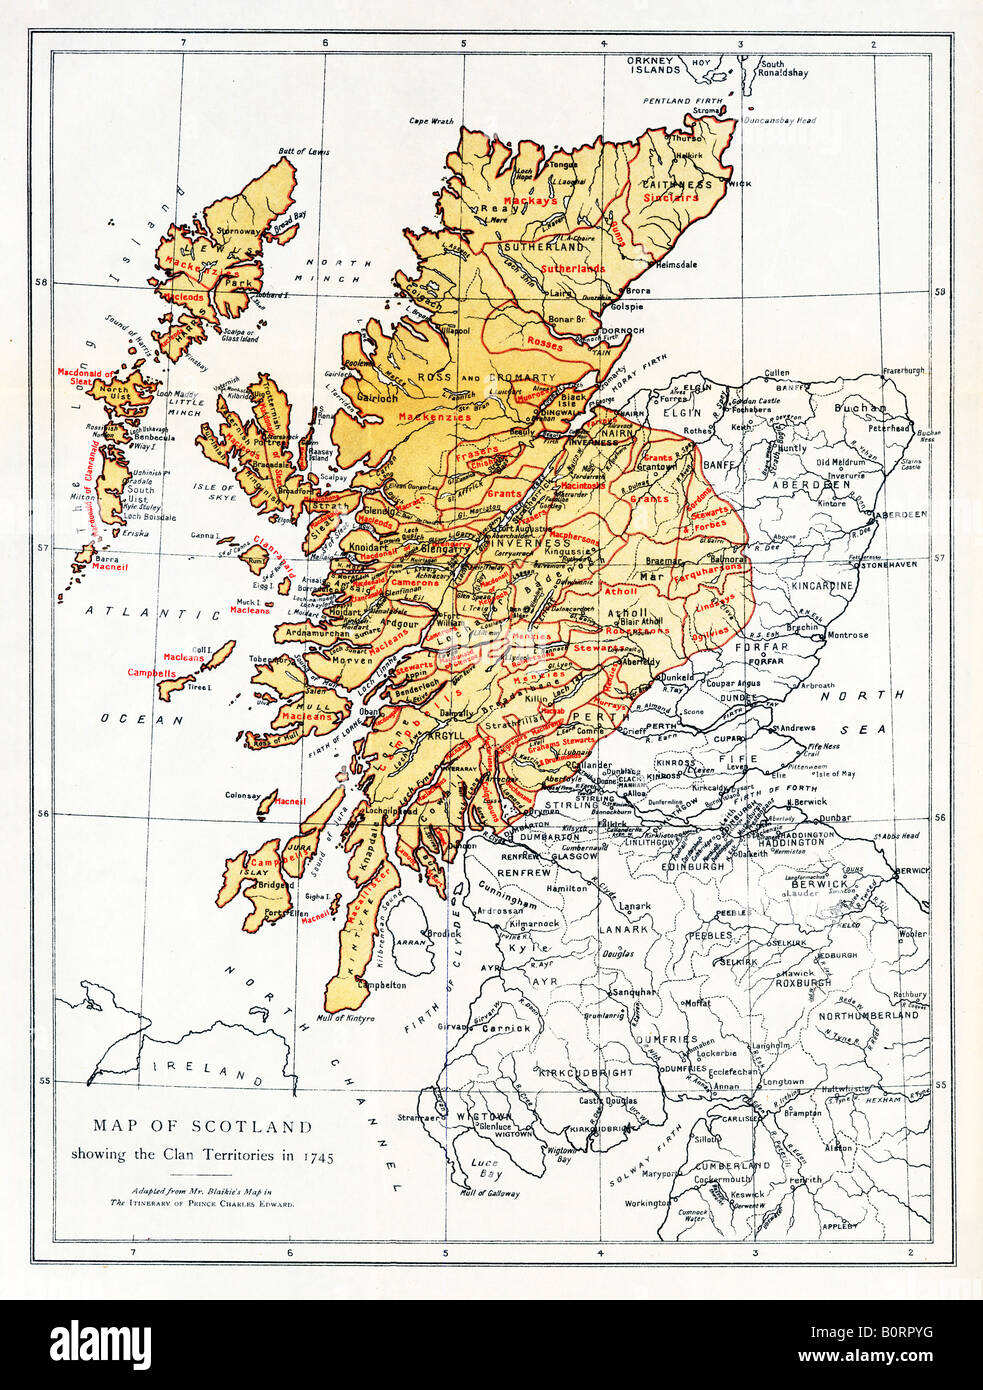 L'Écosse Territoires du Clan 1745 Carte de la clans des Highlands à la rébellion de Bonnie Prince Charlie Banque D'Images